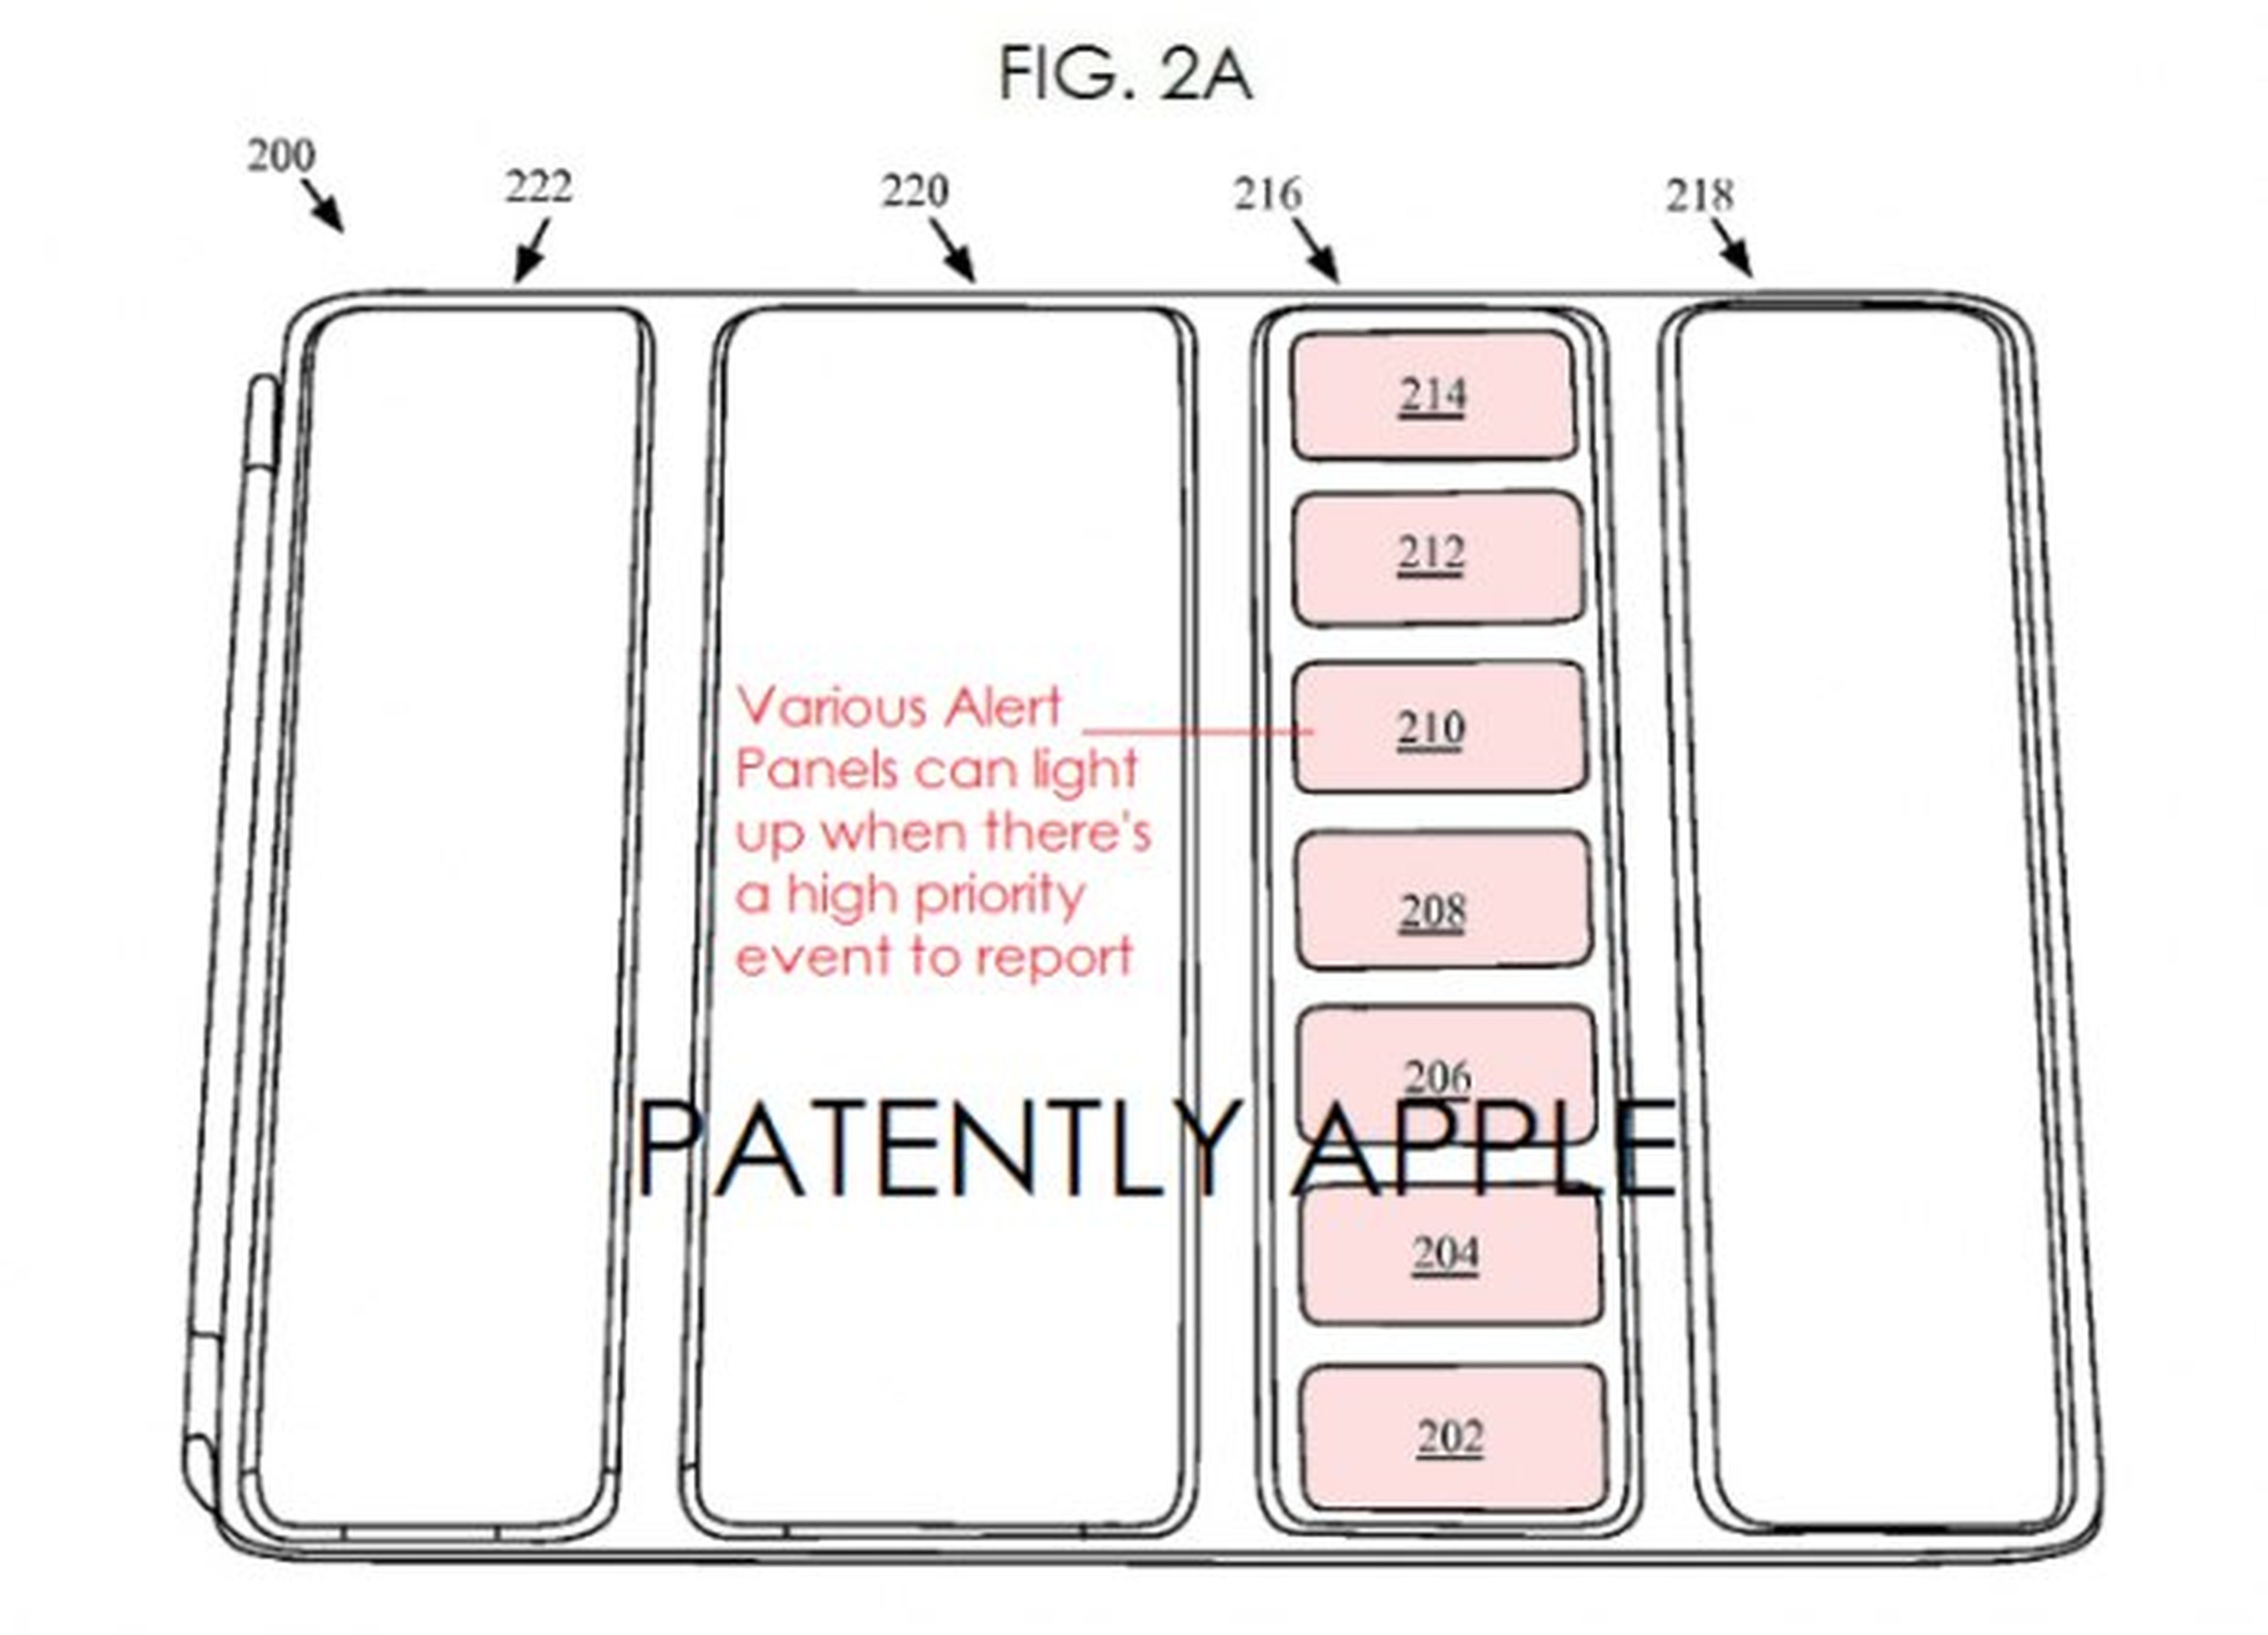 patente apple ipad smartcover